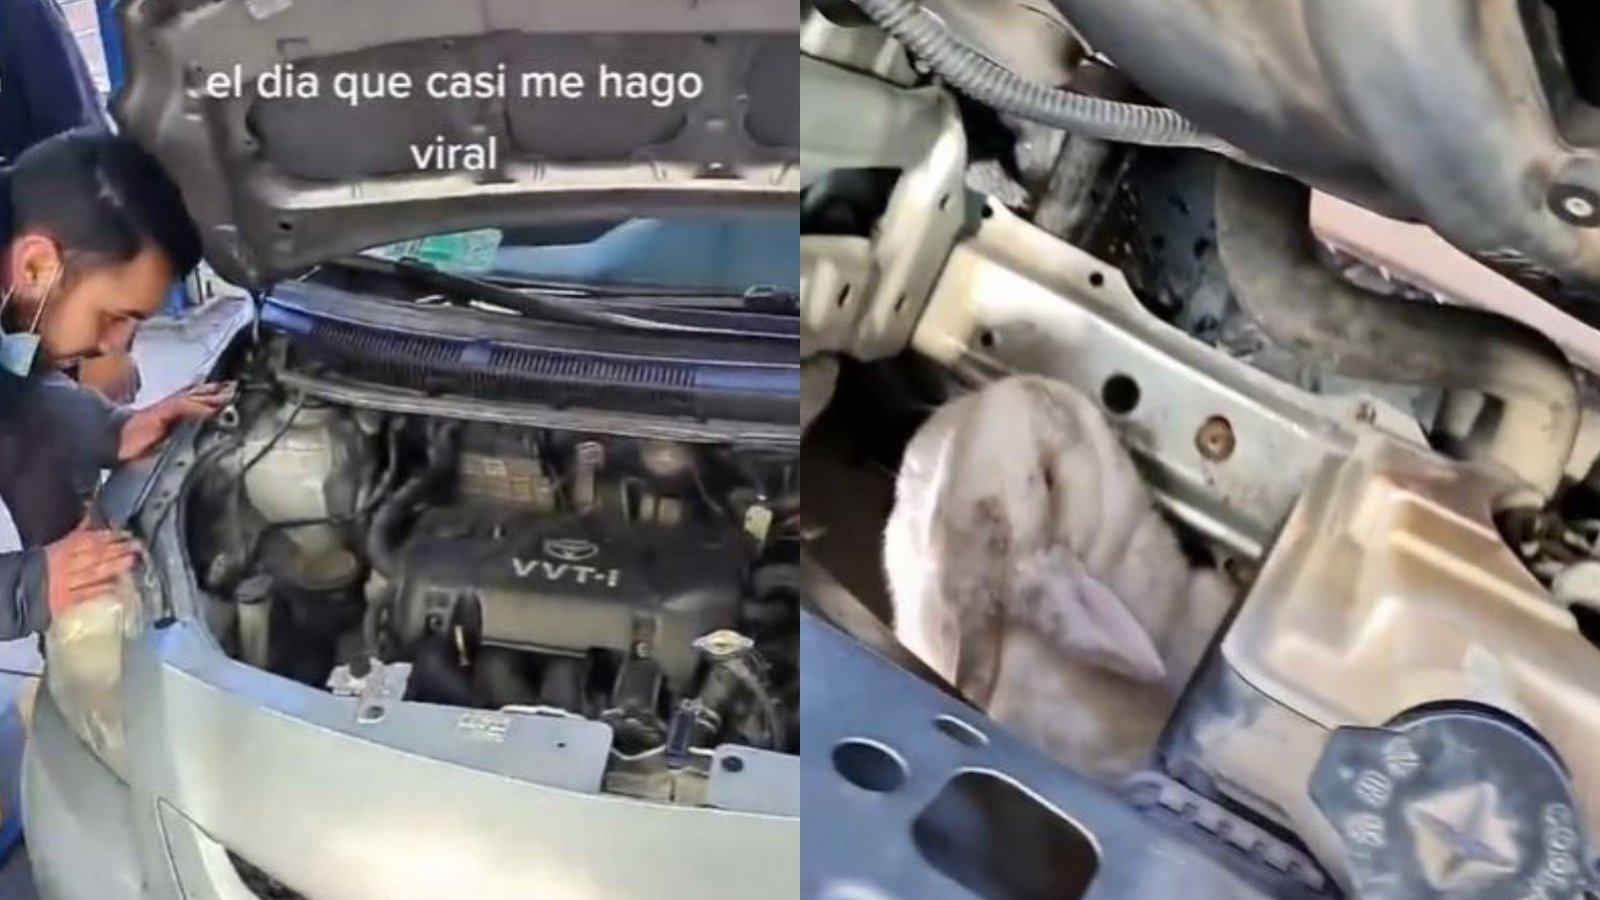 Capturas de video viral que muestra a mecánicos encontrando a un conejo al interior del compartimiento del motor de un auto en plena revisión técnica